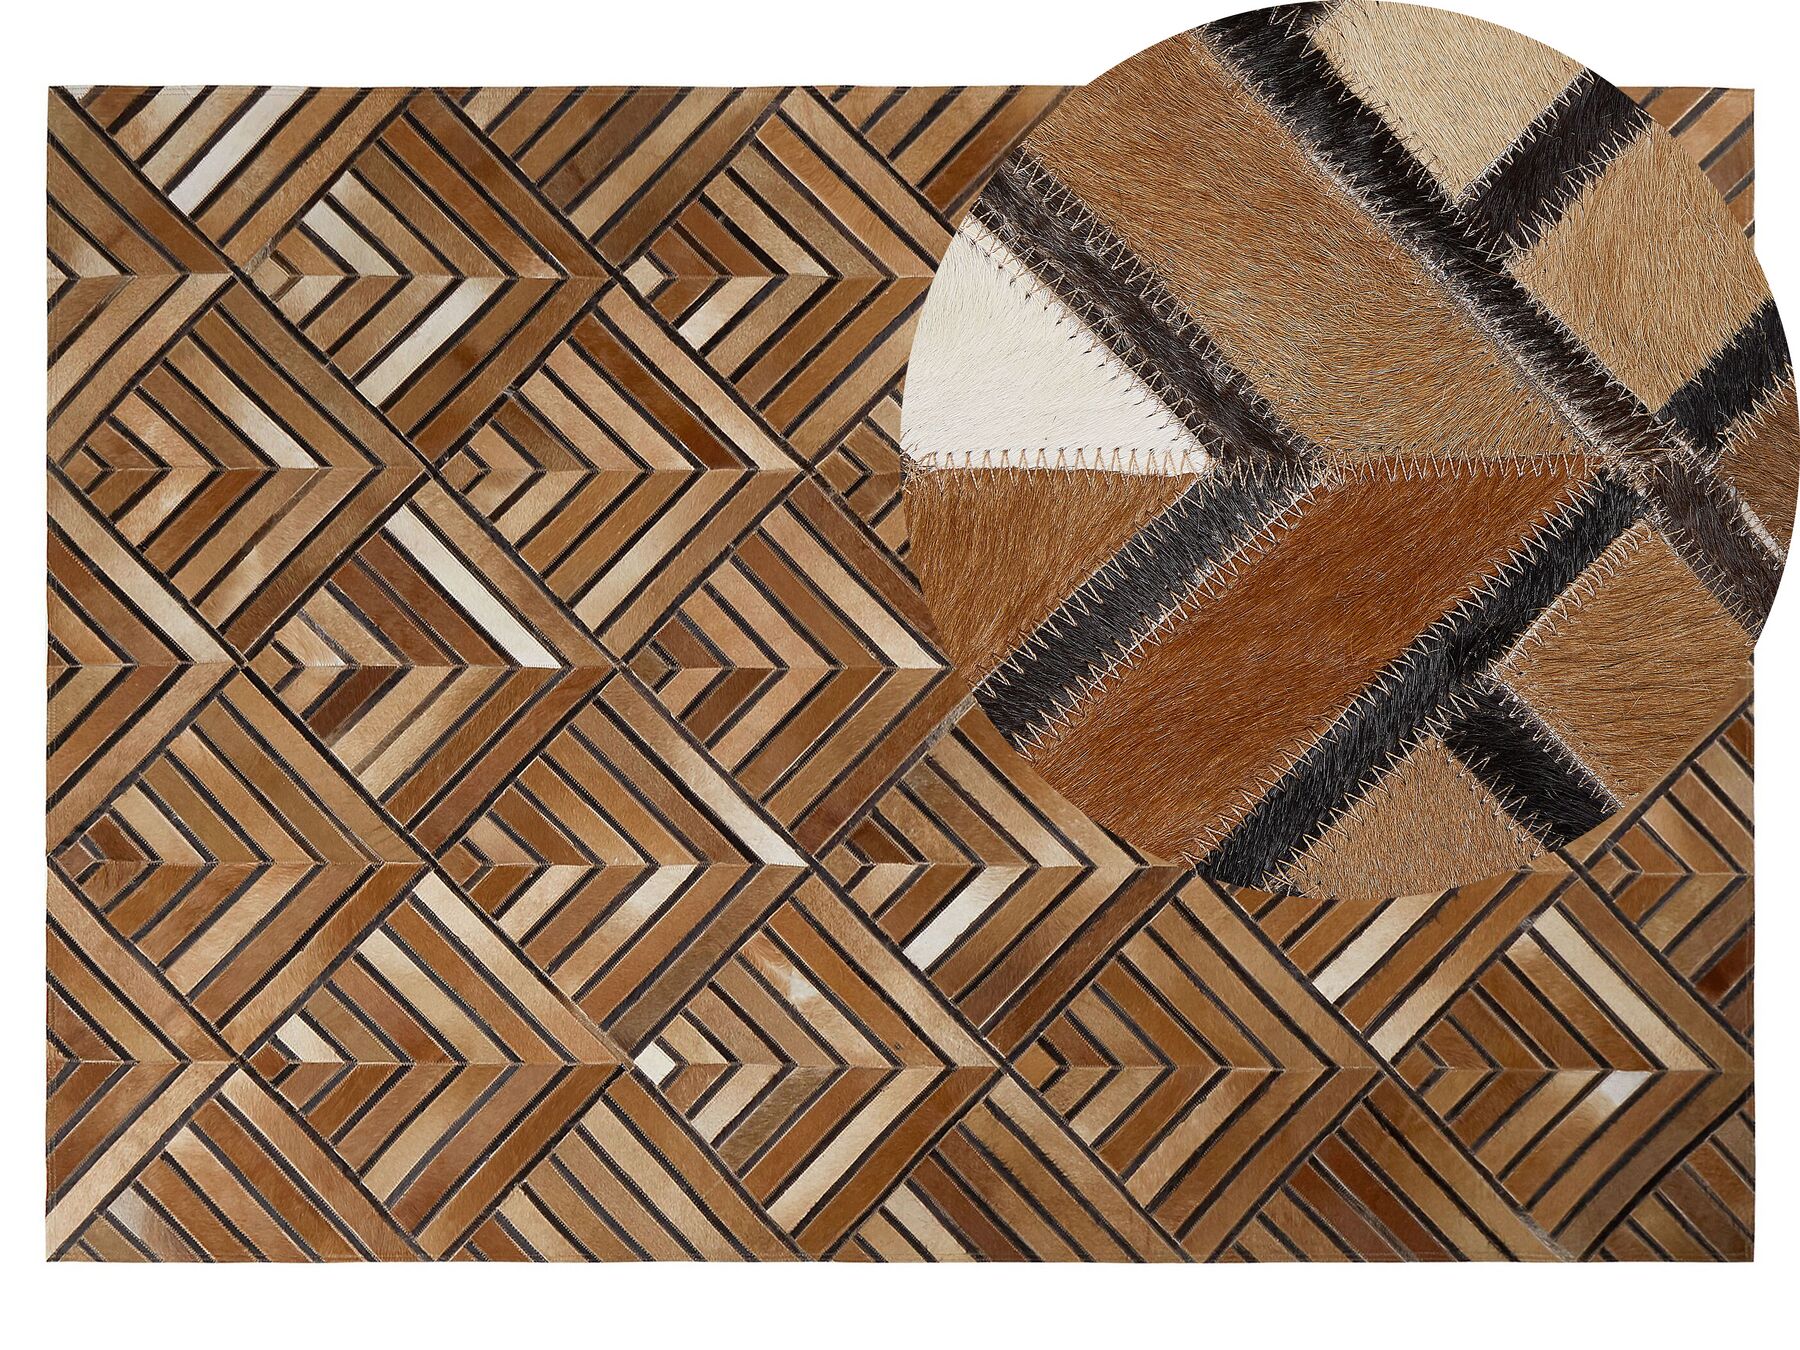 Hnedý kožený koberec  140 x 200 cm TEKIR_764619